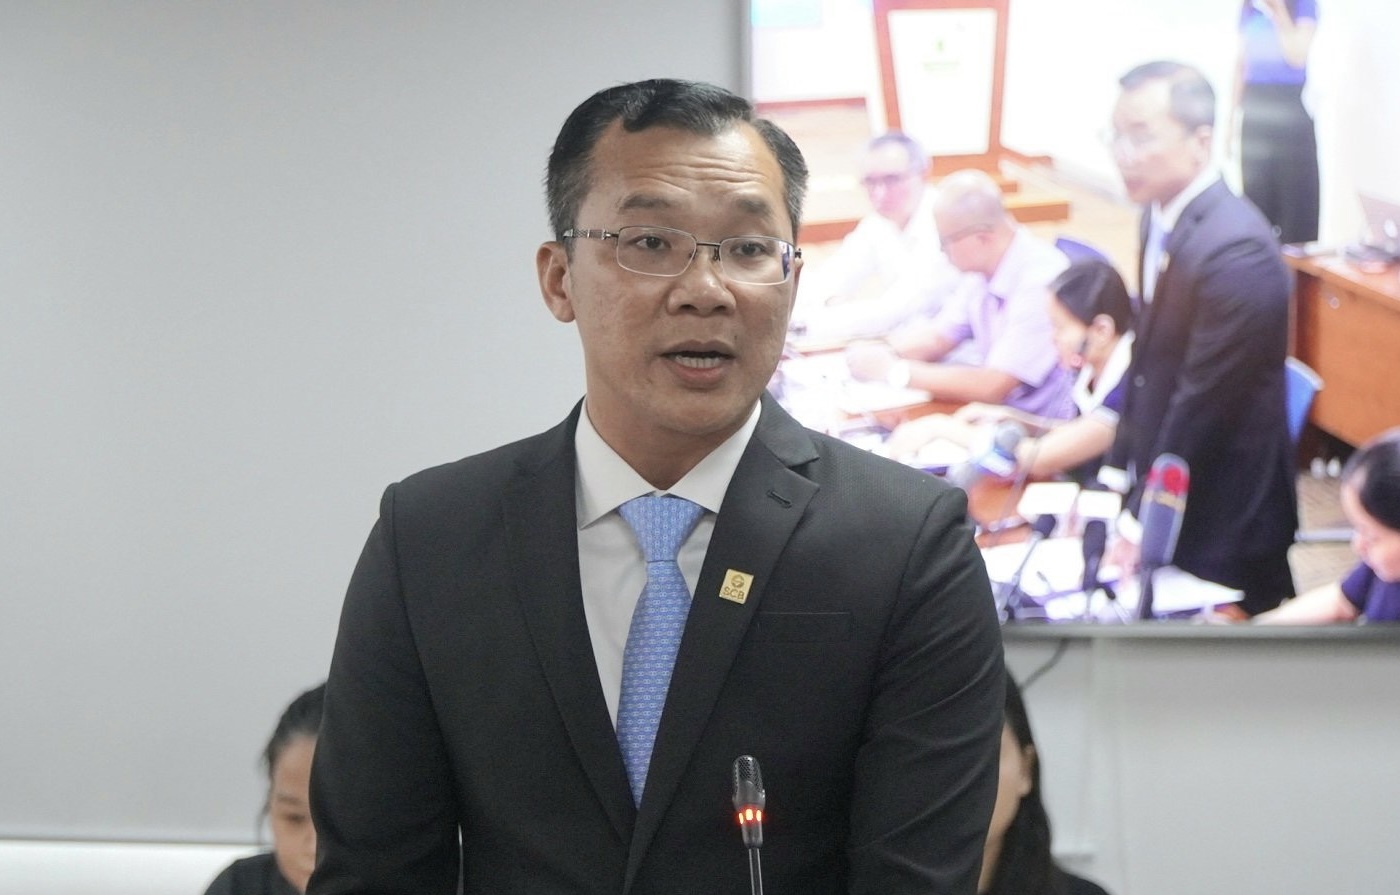 Ông Hoàng Minh Hoàn, Phó Tổng giám đốc Phụ trách điều hành Ngân hàng TMCP Sài Gòn (SCB) phát biểu tại buổi họp báo.